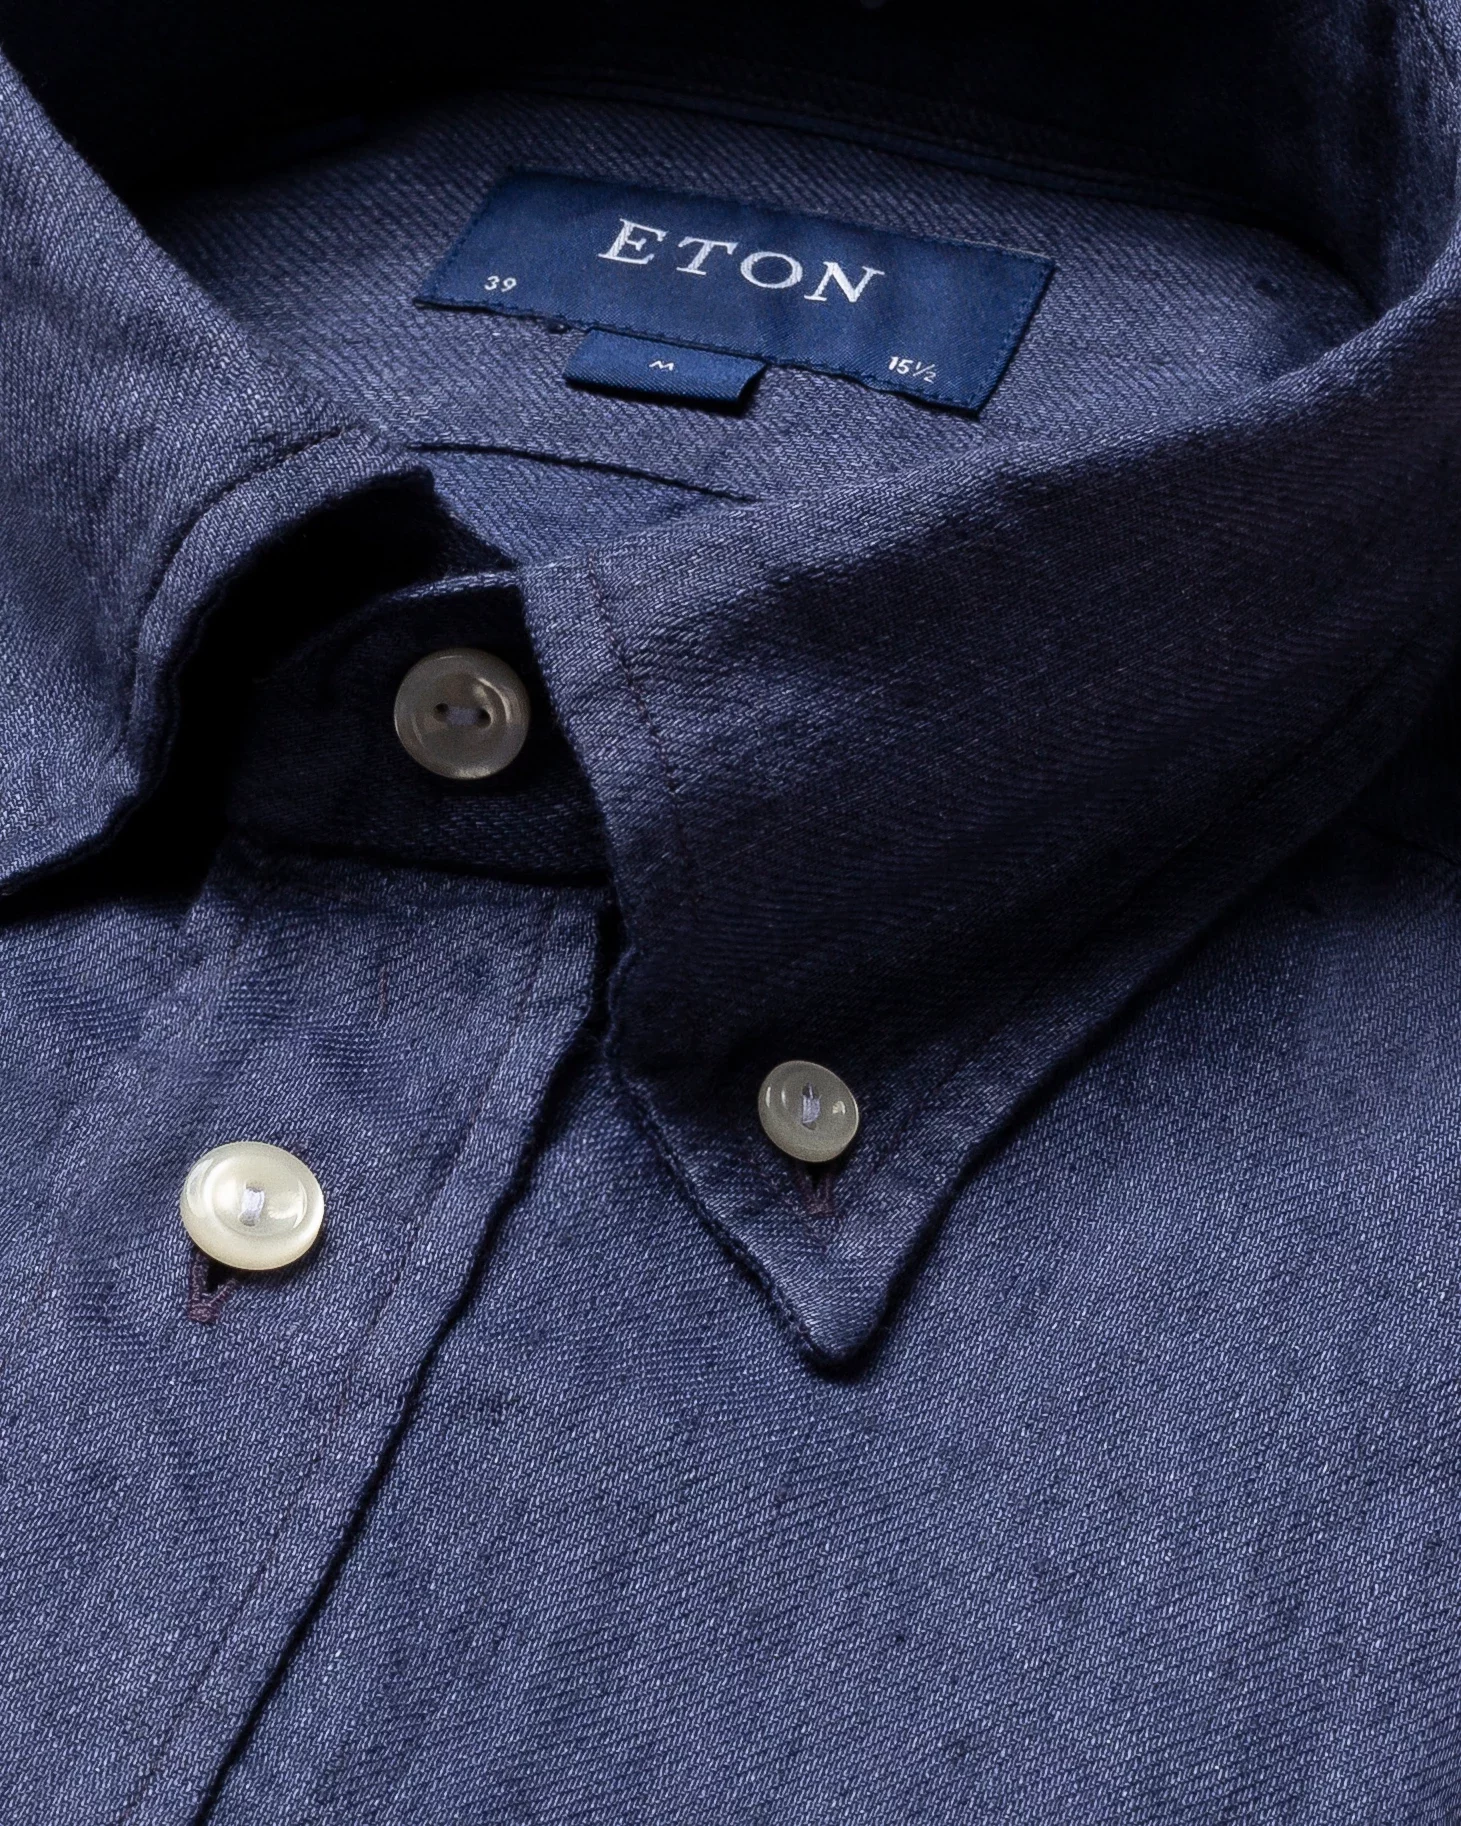 Eton - navy luxe linen shirt